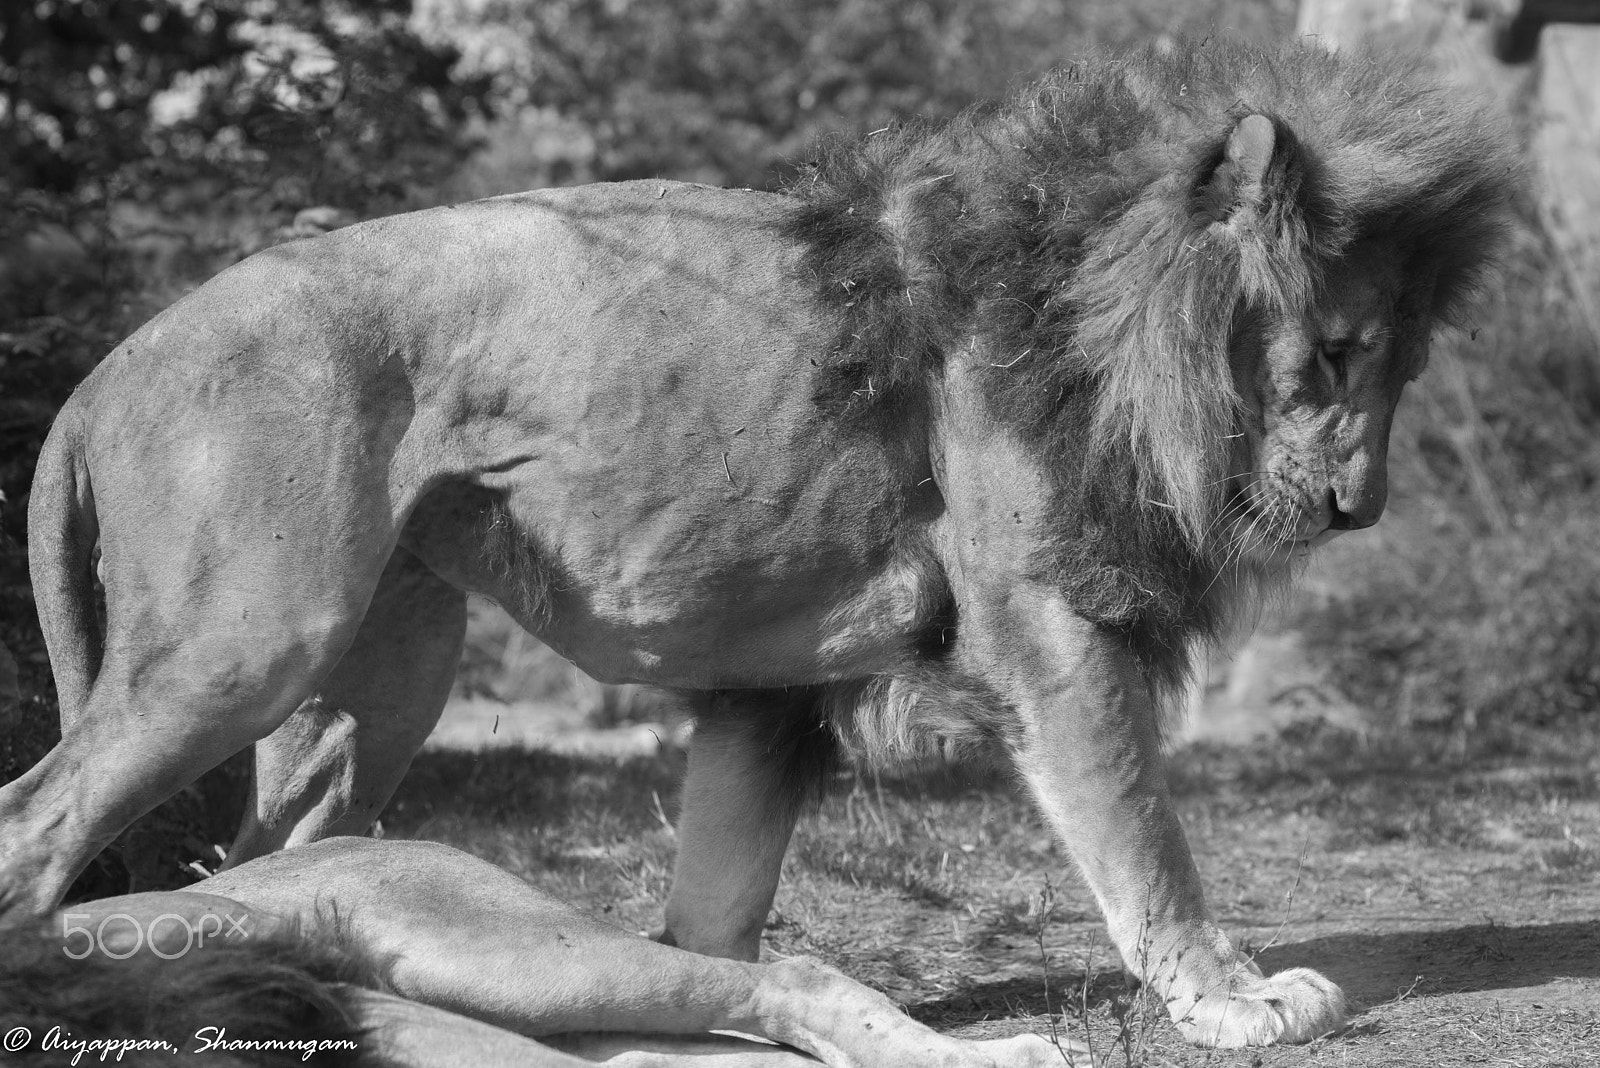 Nikon D810 + AF Nikkor 85mm f/1.8 sample photo. African lion in city photography